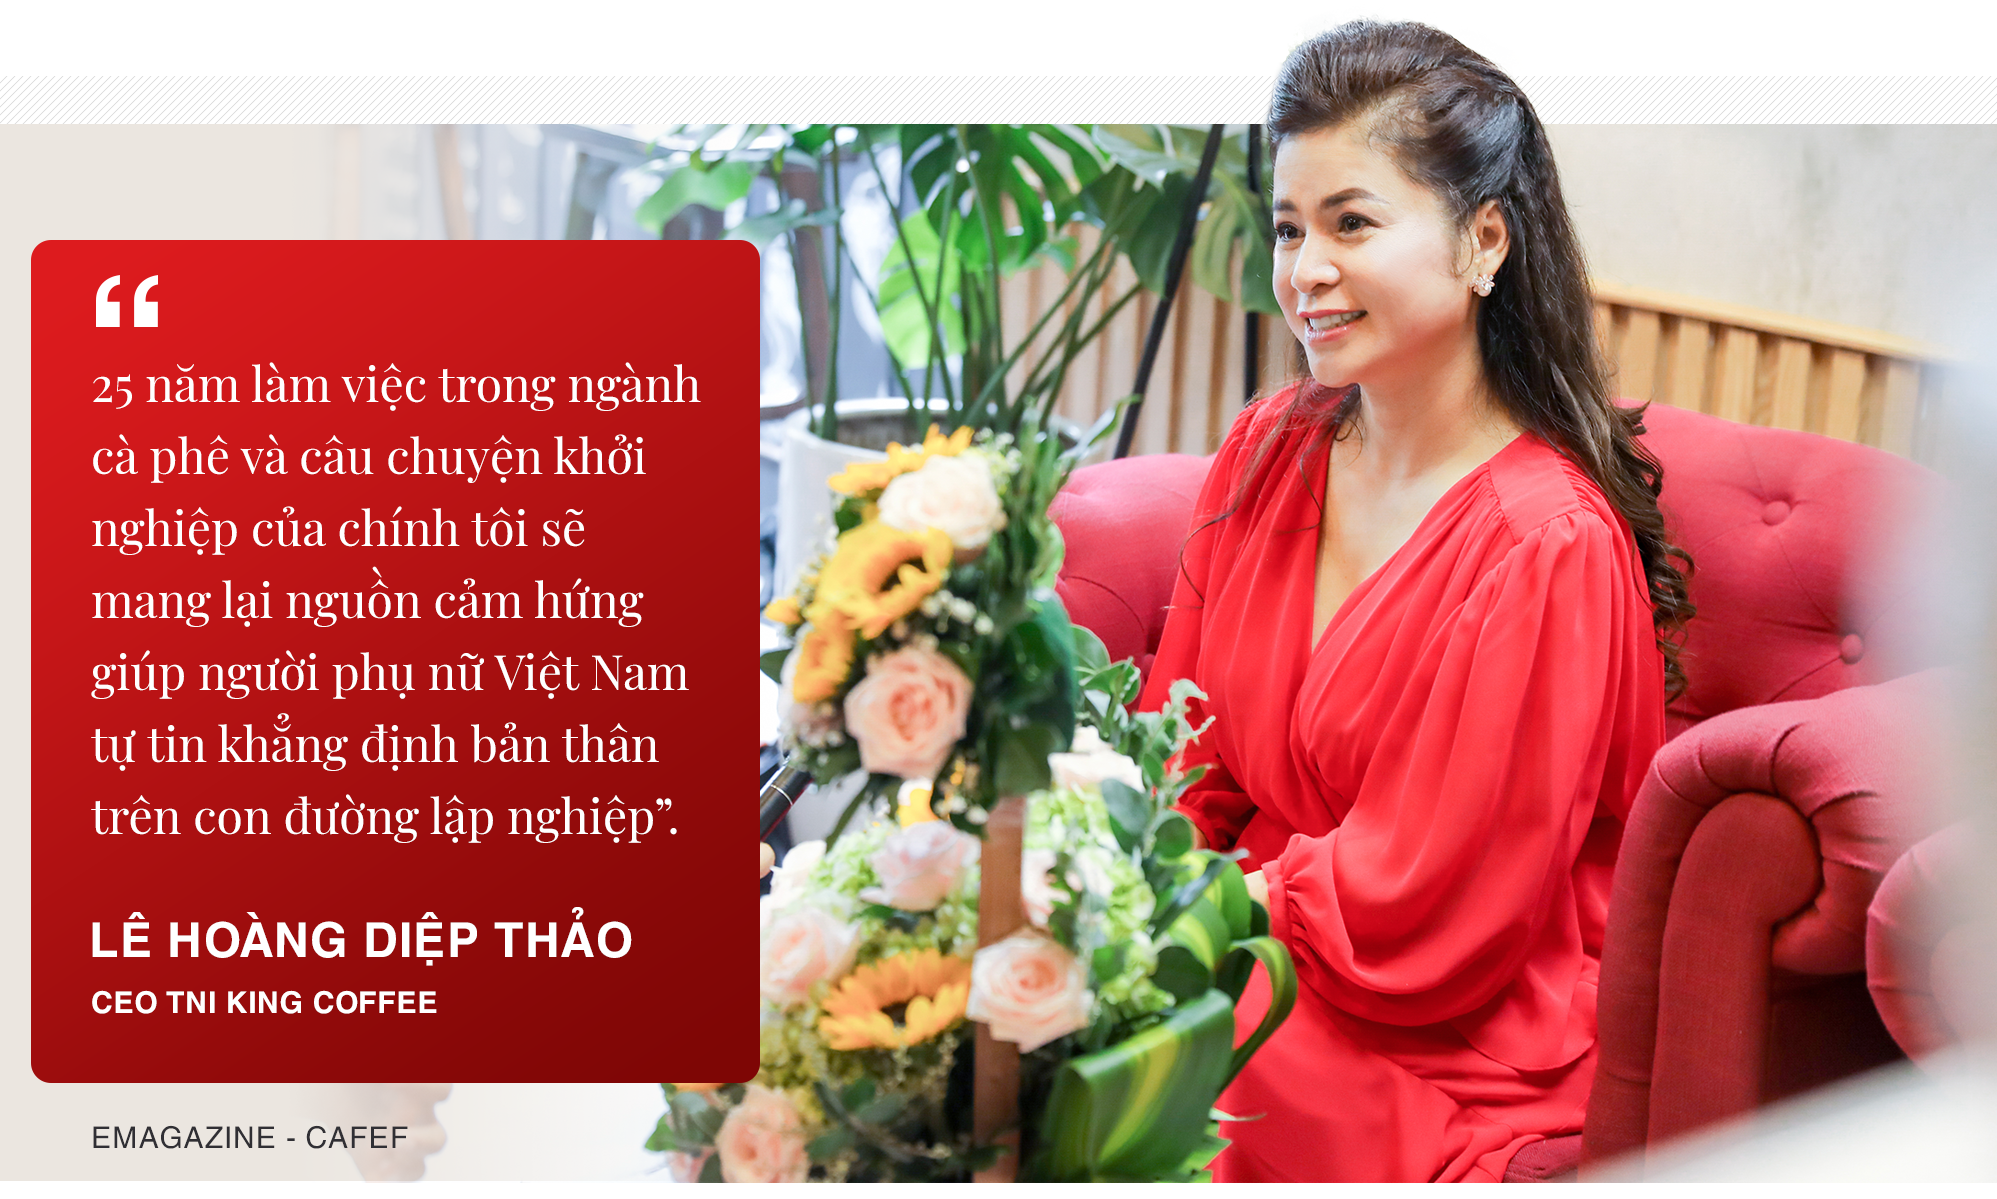 Nữ doanh nhân Lê Hoàng Diệp Thảo: Tạo nguồn cảm hứng cho phụ nữ trên con đường lập nghiệp - Ảnh 8.